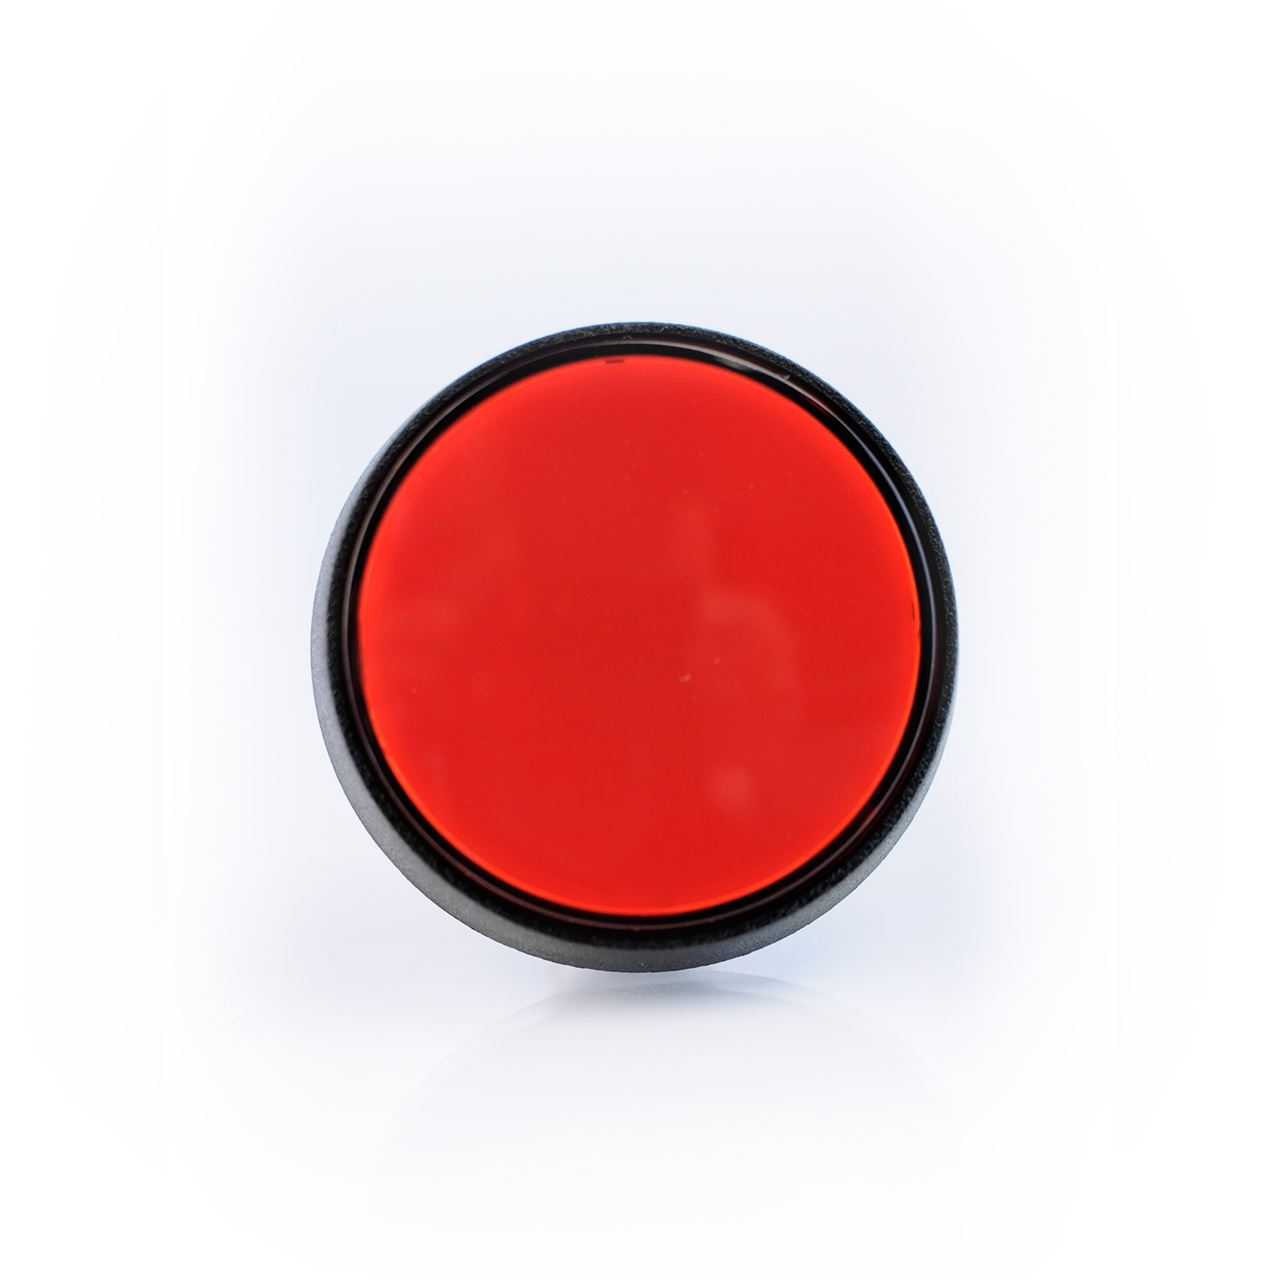 Big Red Push Button - RobotShop